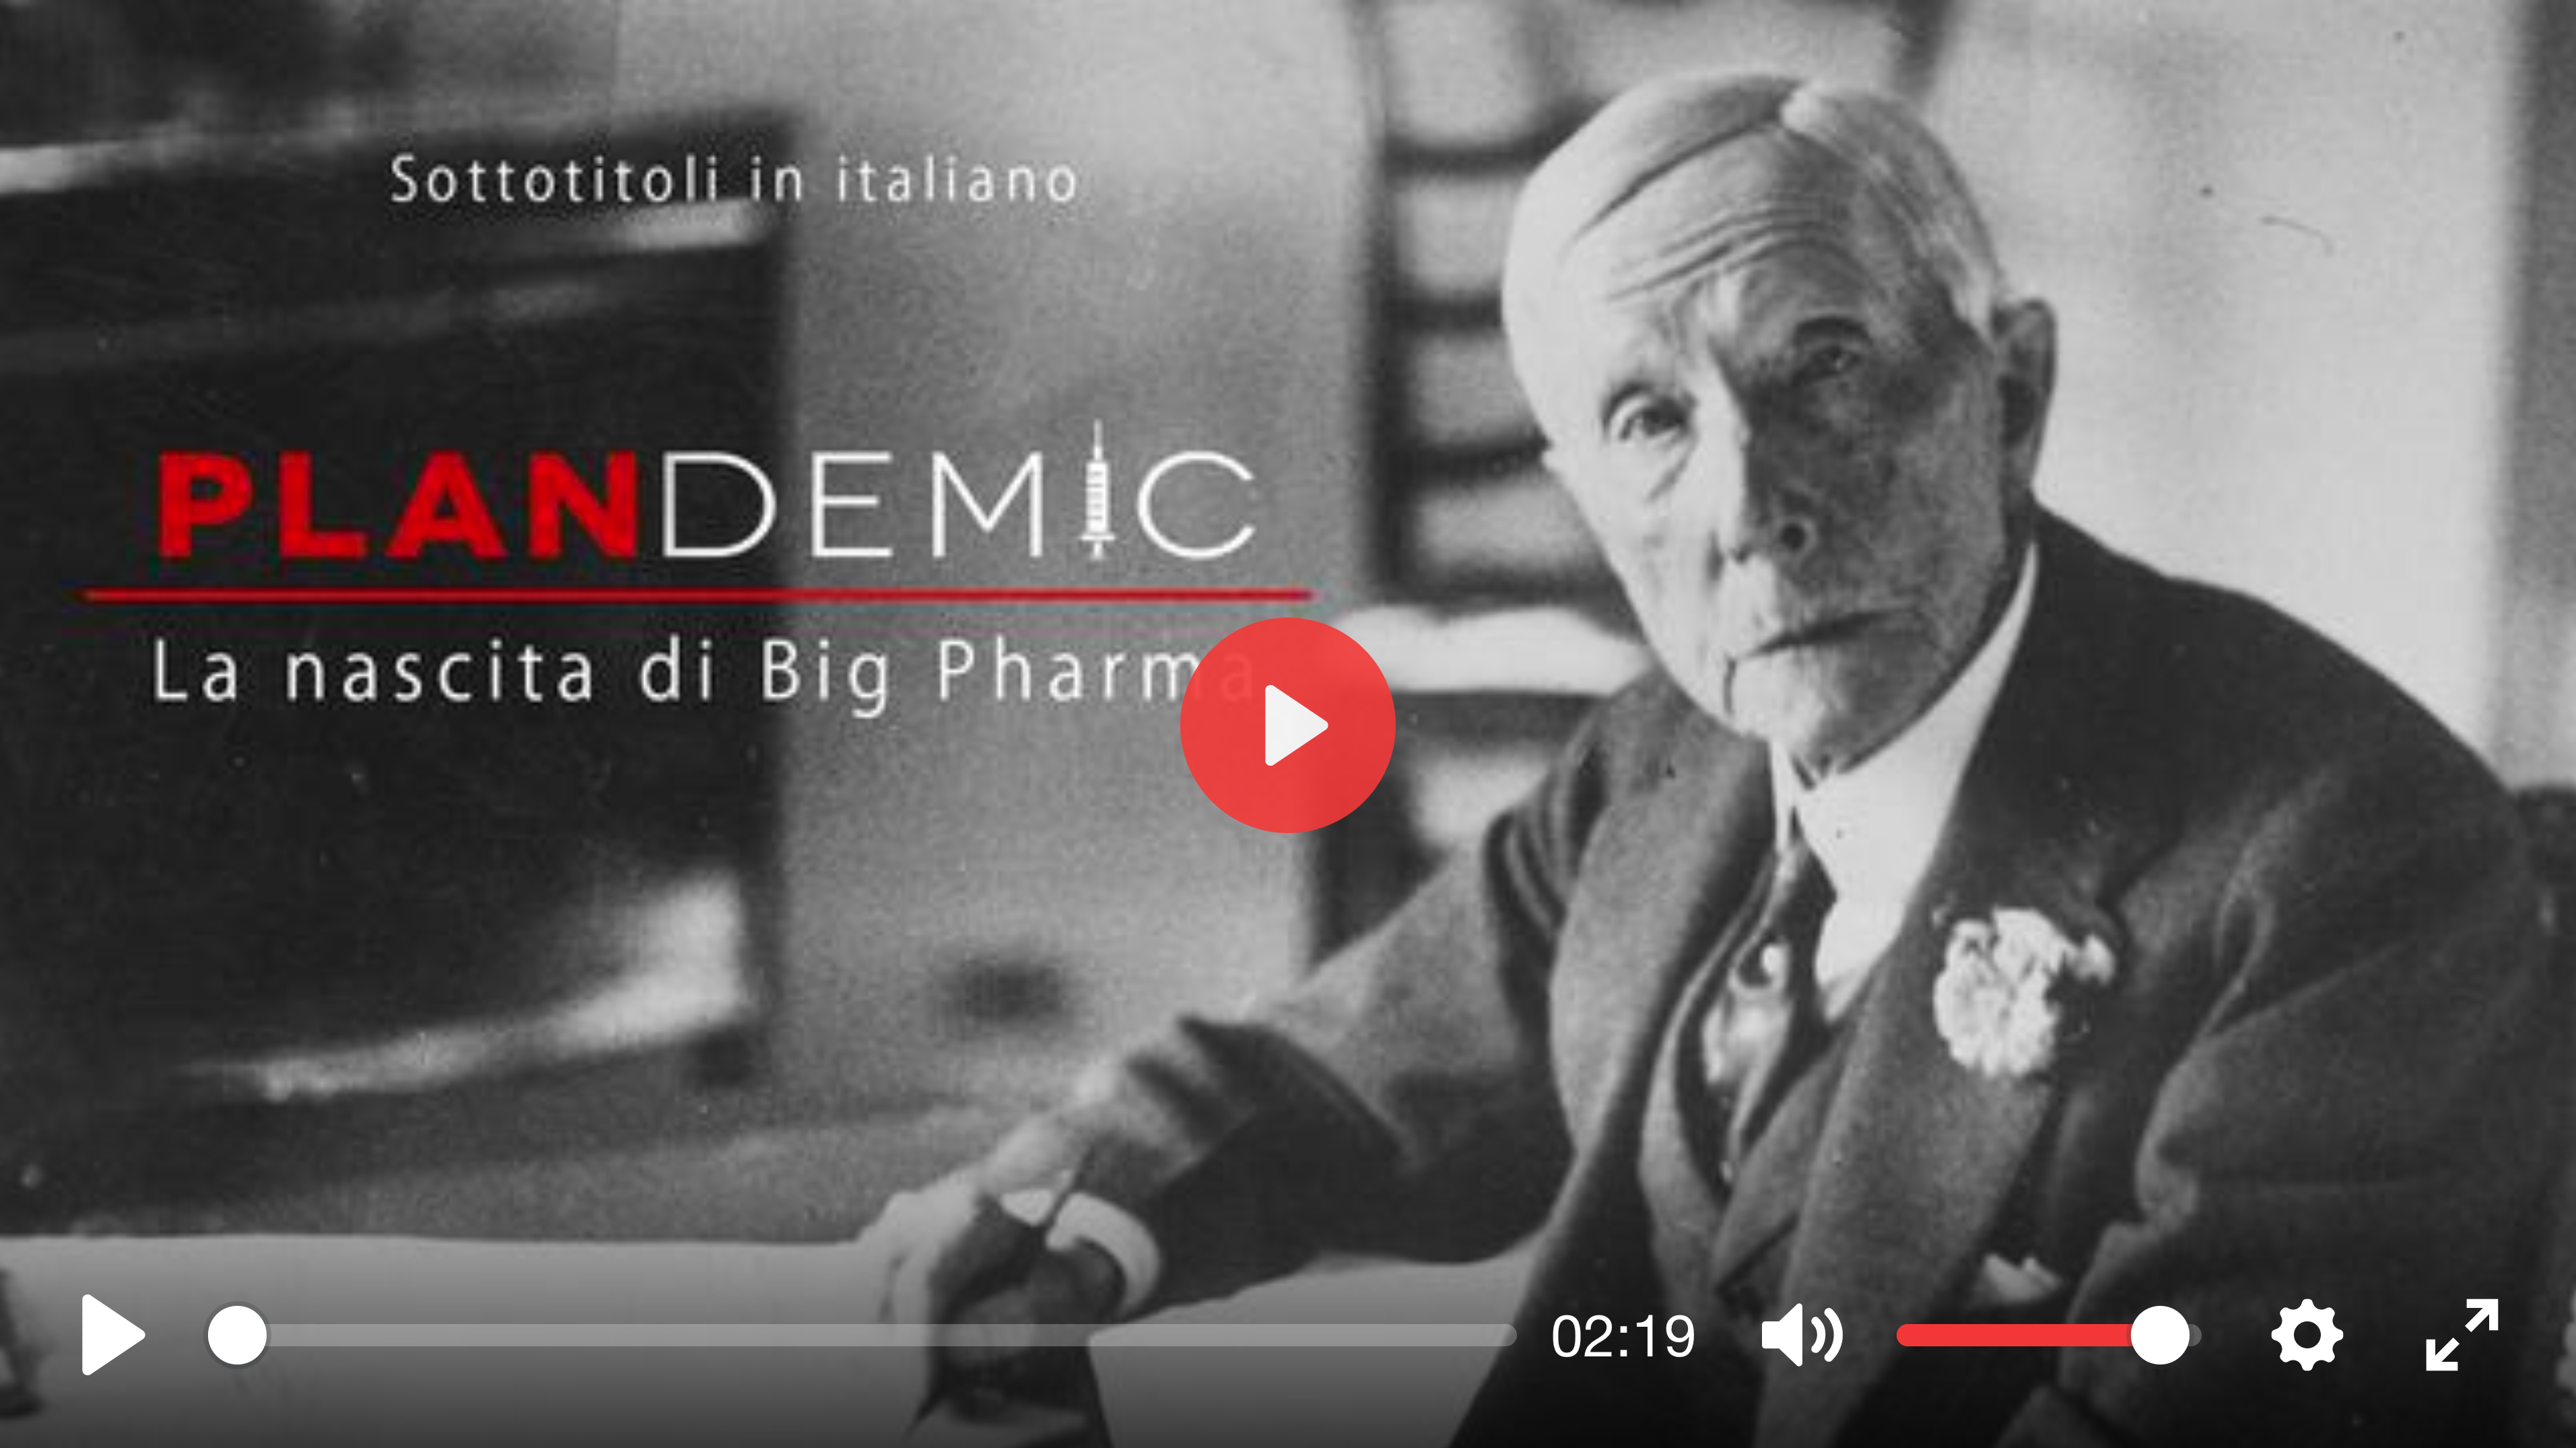 À espera de "Plandemic: 2 Doctornation" - O nascimento da Big Pharma Big